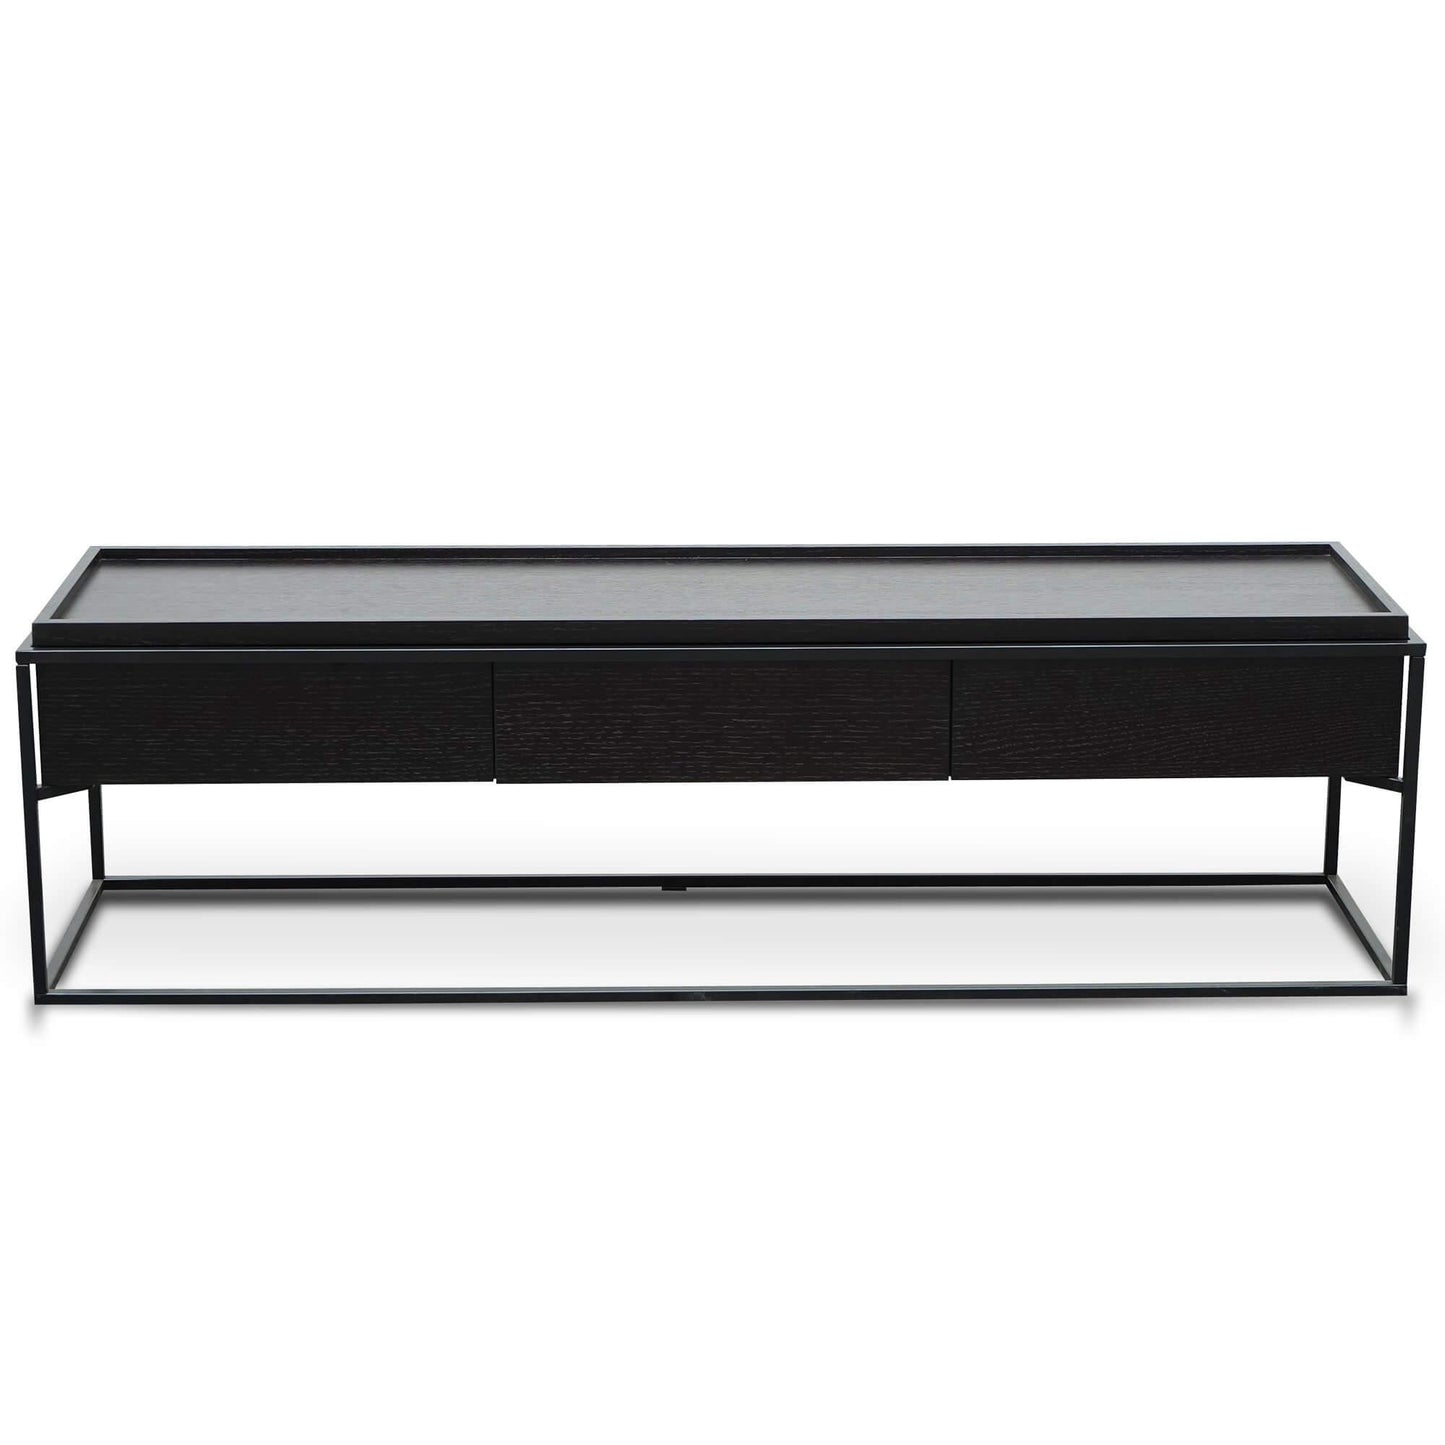 Calibre 150cm TV Entertainment Unit - Full Black TV2712-IG-Entertainment Units-Calibre-Prime Furniture